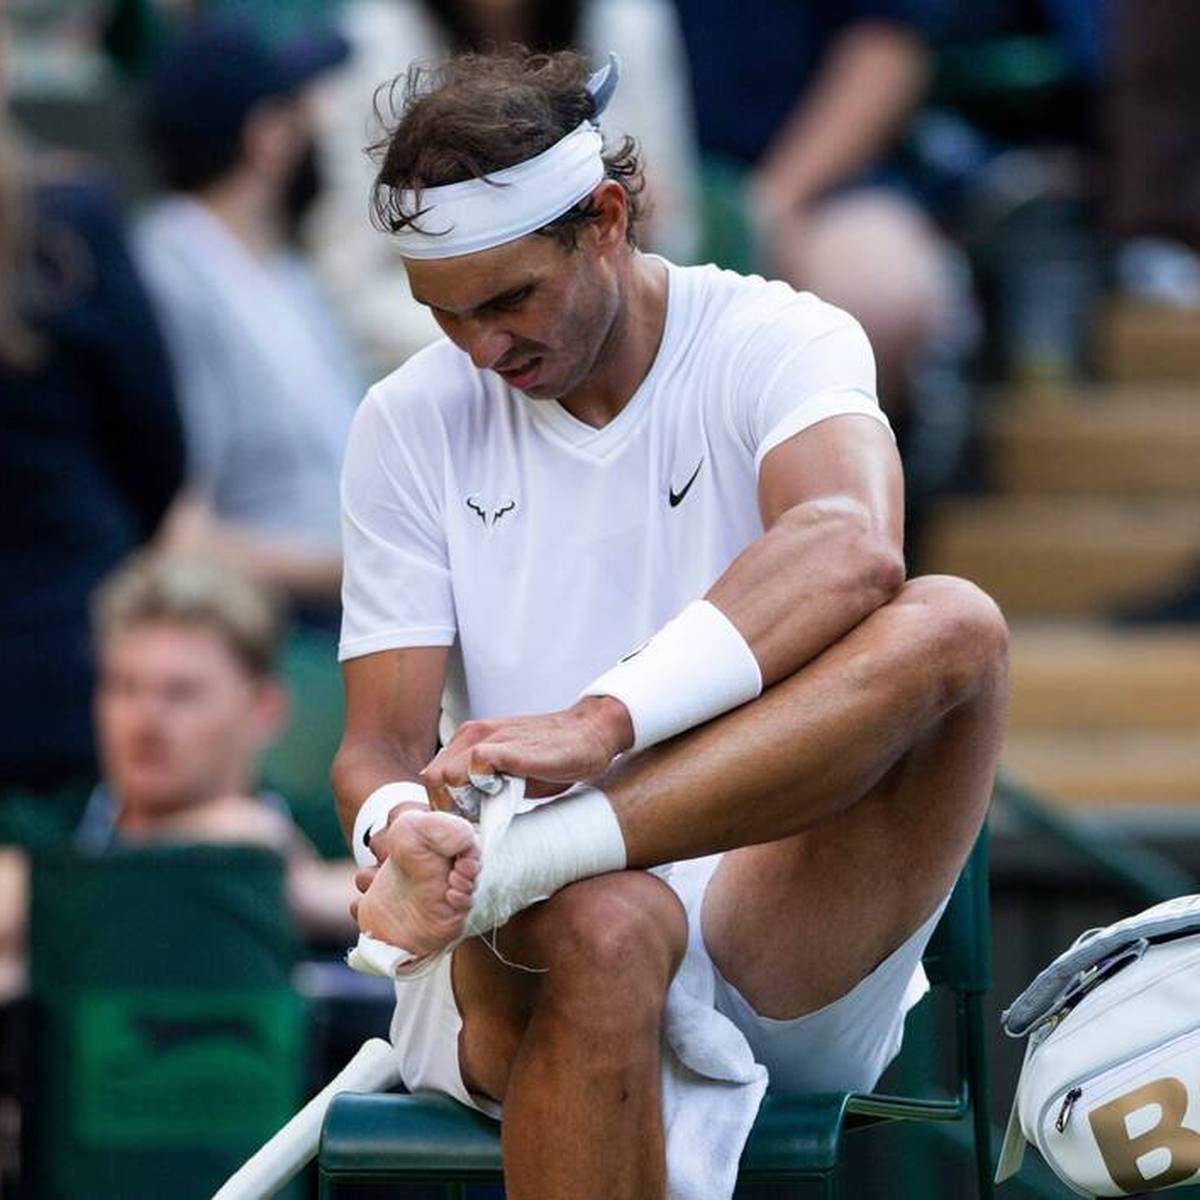 Rafael Nadal gewann in diesem Jahr bereits zwei Grand-Slam-Turniere. Dennoch hatte der Spanier mit gesundheitlichen Problemen zu kämpfen. Sein Trainer verrät schockierende Details.